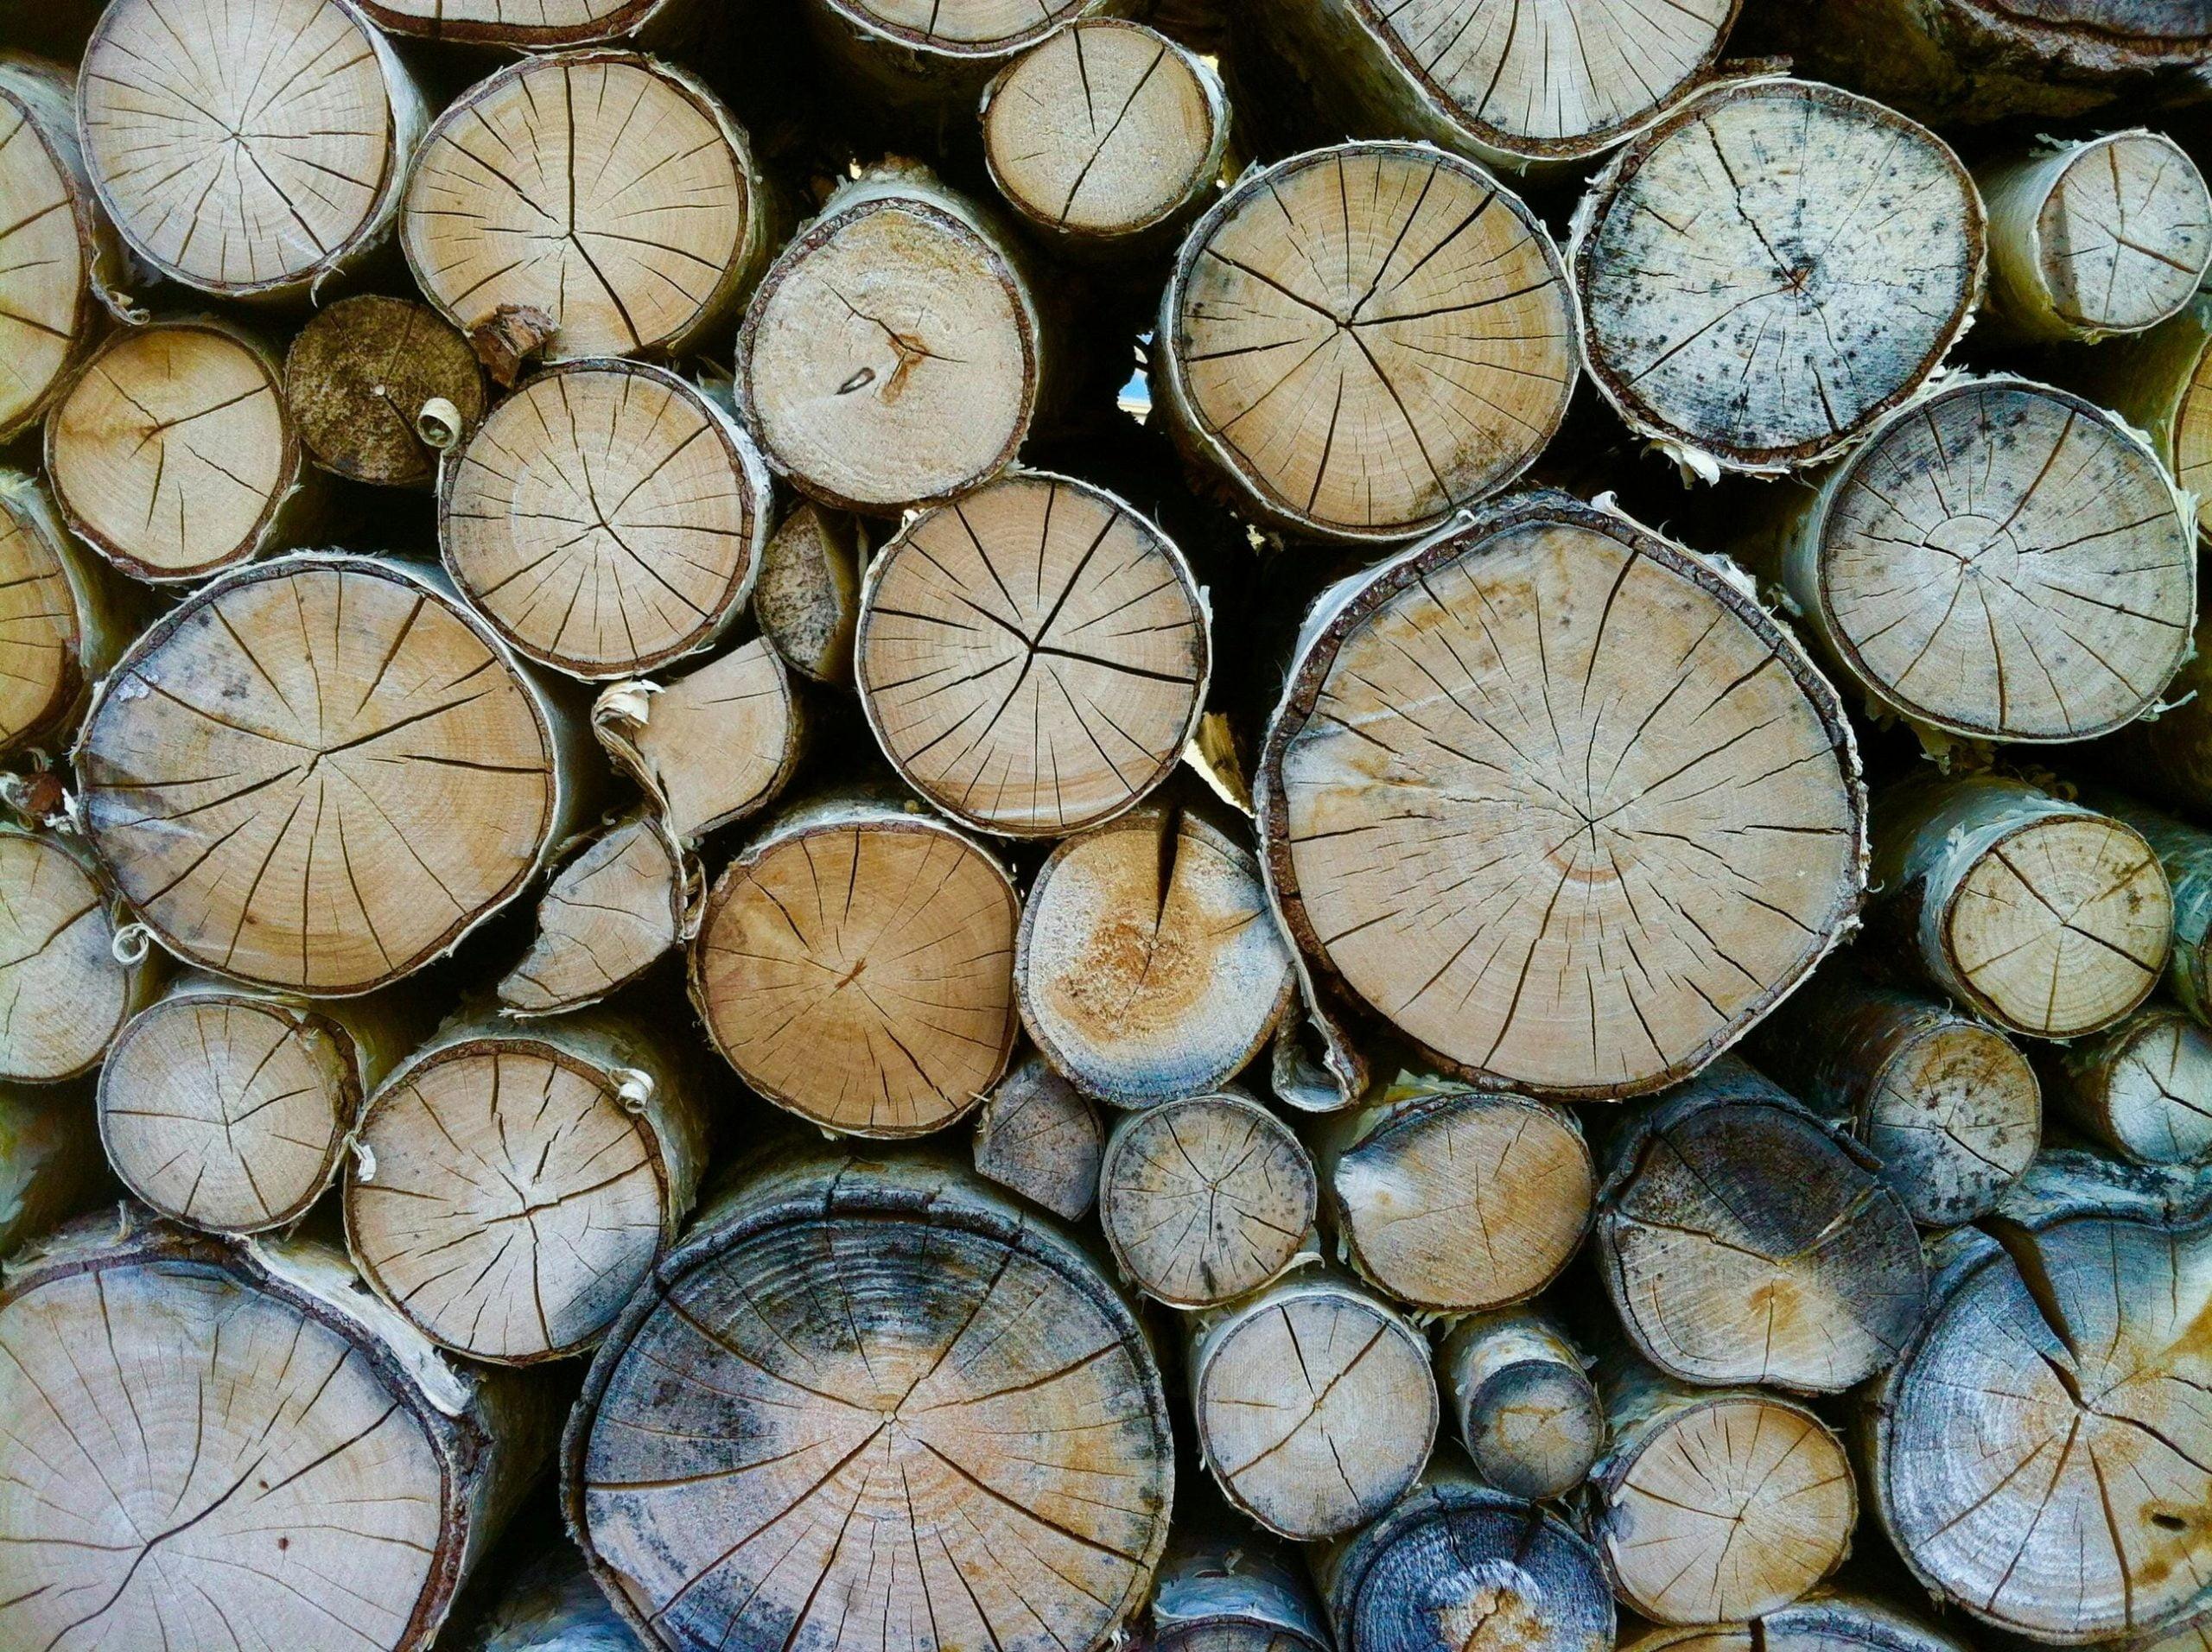 древесина